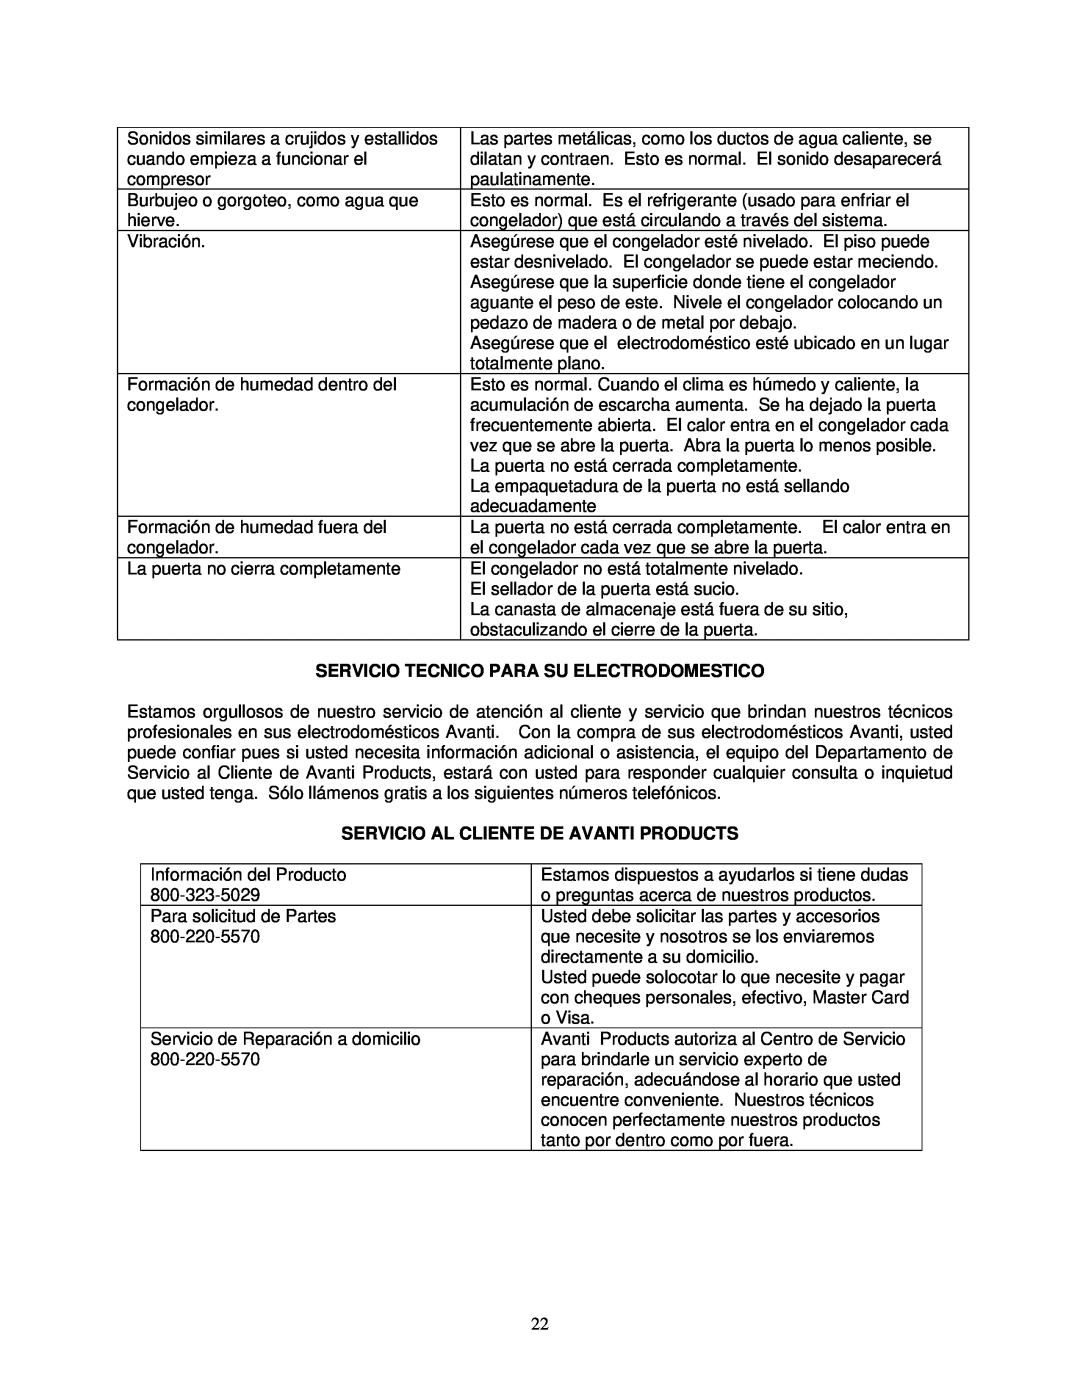 Avanti CF211G instruction manual Servicio Tecnico Para Su Electrodomestico, Servicio Al Cliente De Avanti Products 